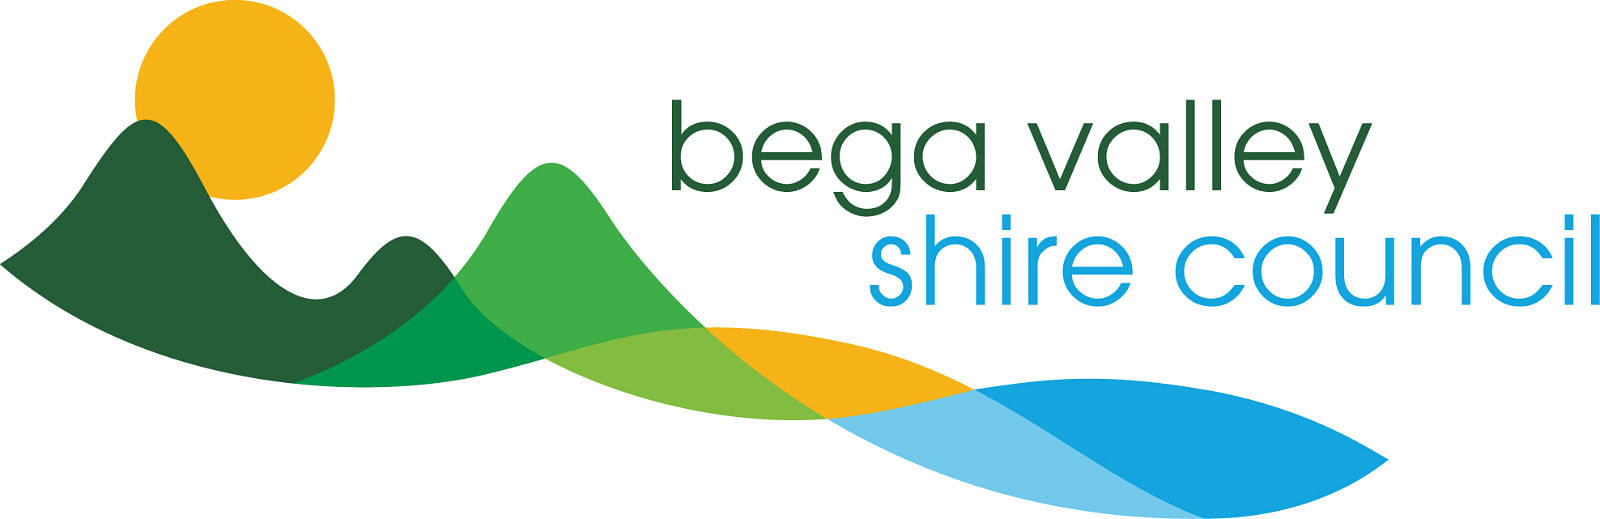 Bega Valley Shire Council logo.